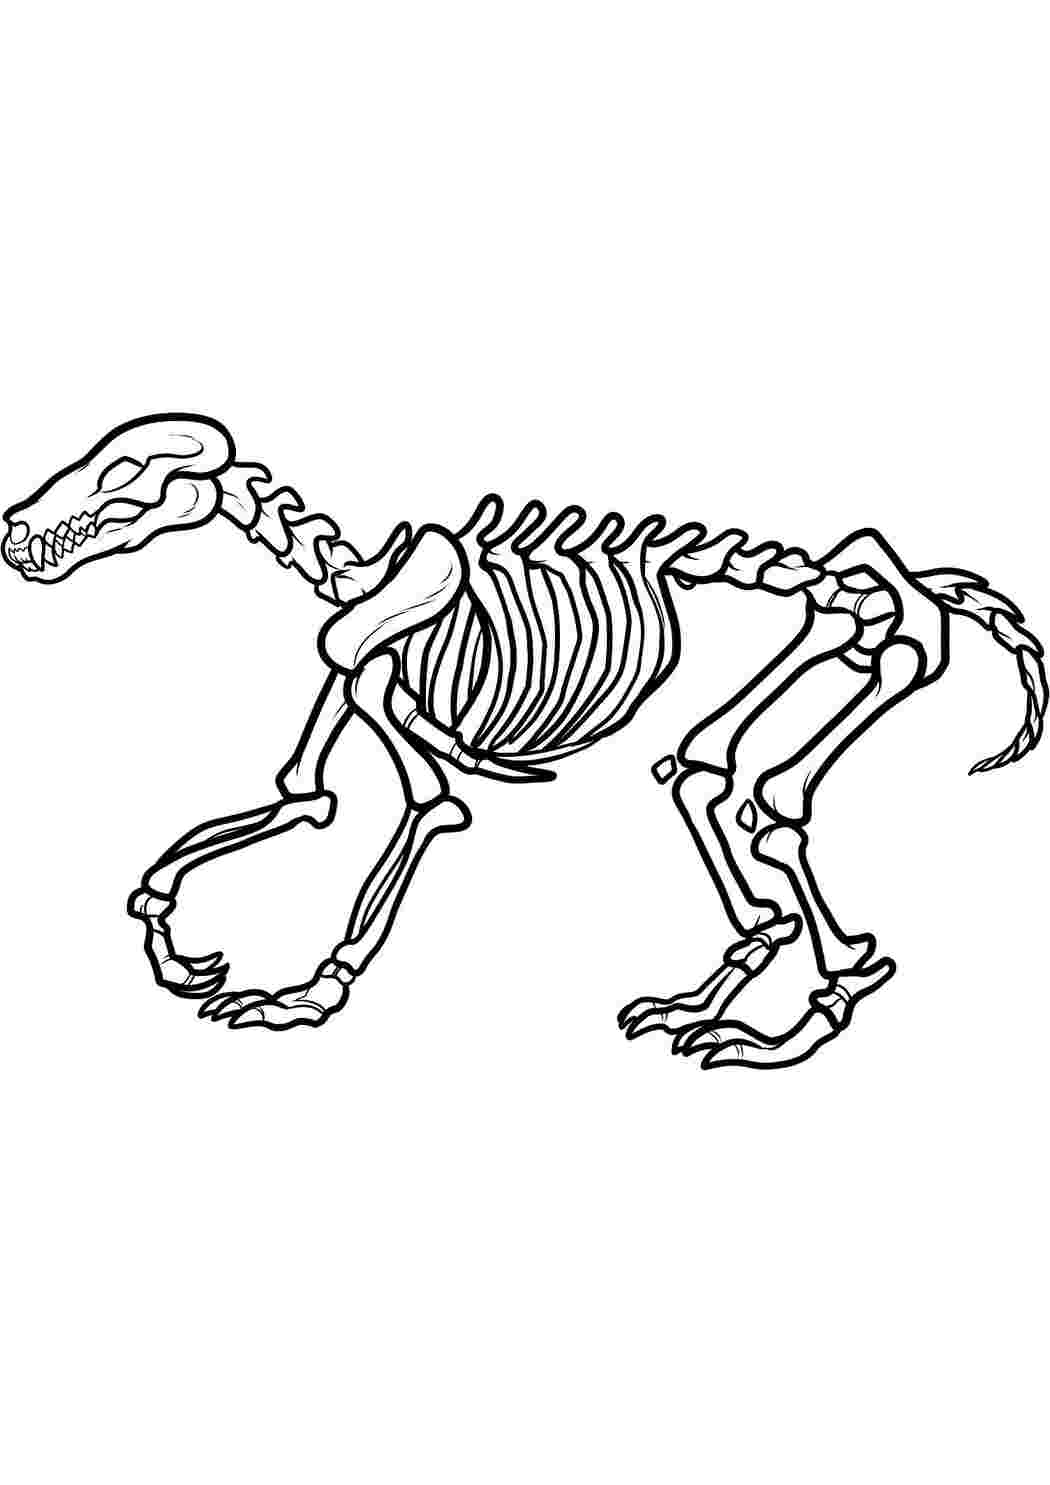 Раскраски картинки на рабочий стол онлайн Скелет динозавра Раскраски для мальчиков